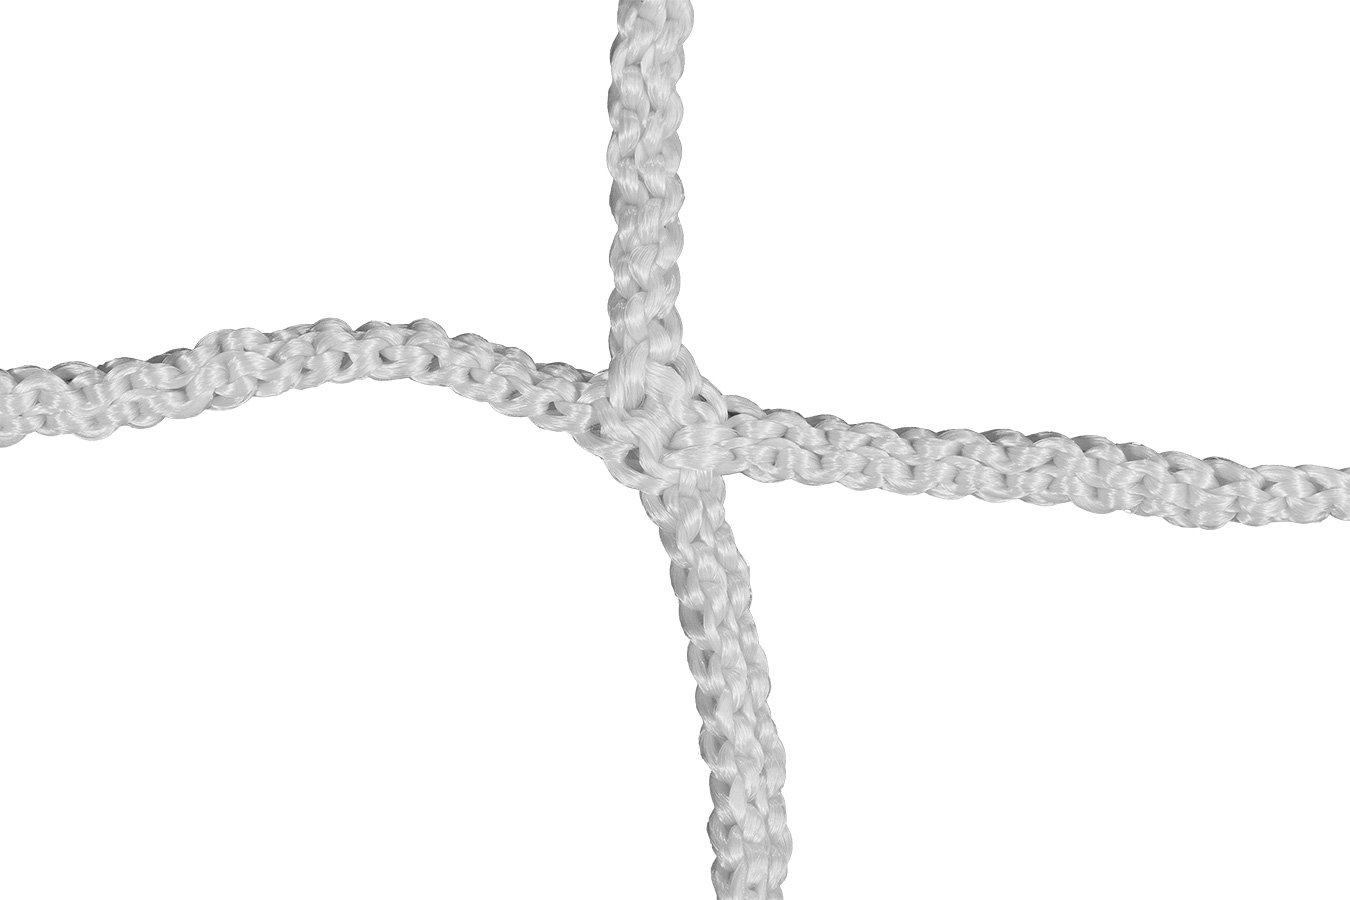 Kwikgoal 3mm Solid braid Knotless Box Net | 3B15 Nets Kwikgoal 